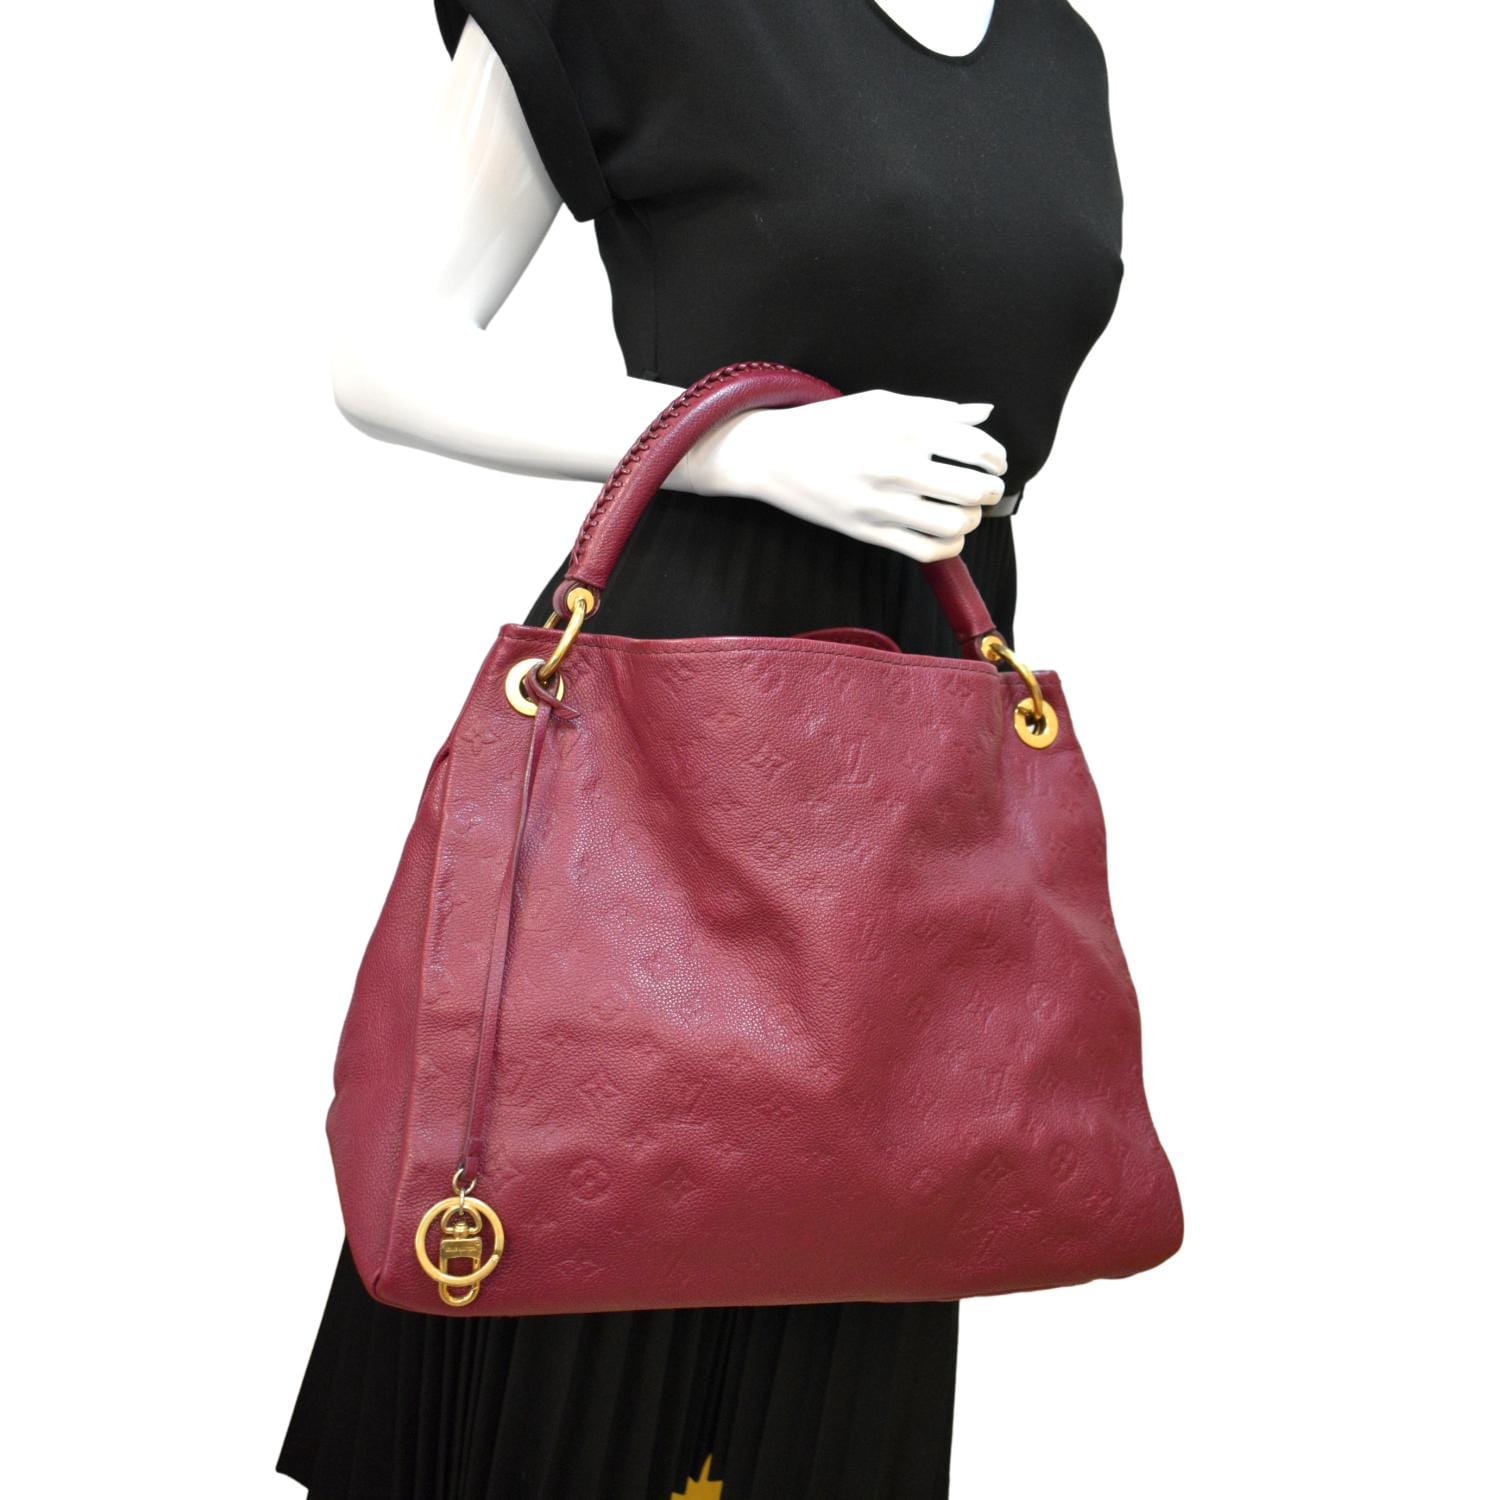 Loop Hobo Monogram Empreinte Leather - Handbags M46739